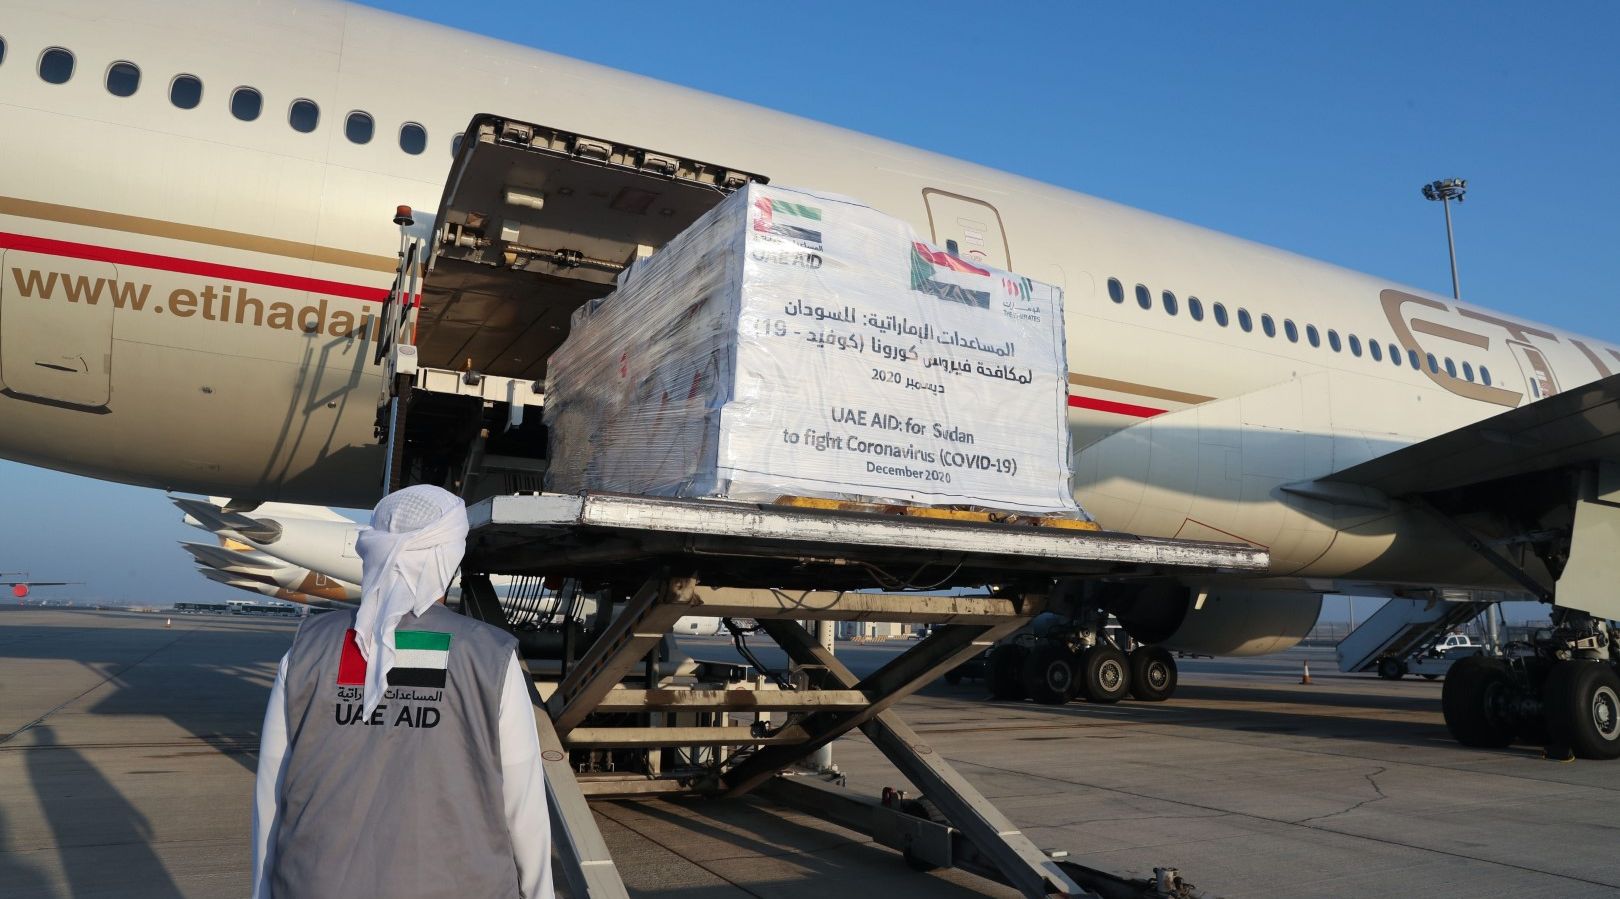 "الإمارات ترسل طائرة مساعدات طبية سابعة إلى دولة السودان لدعم جهودها في التصدي لجائحة كورونا "